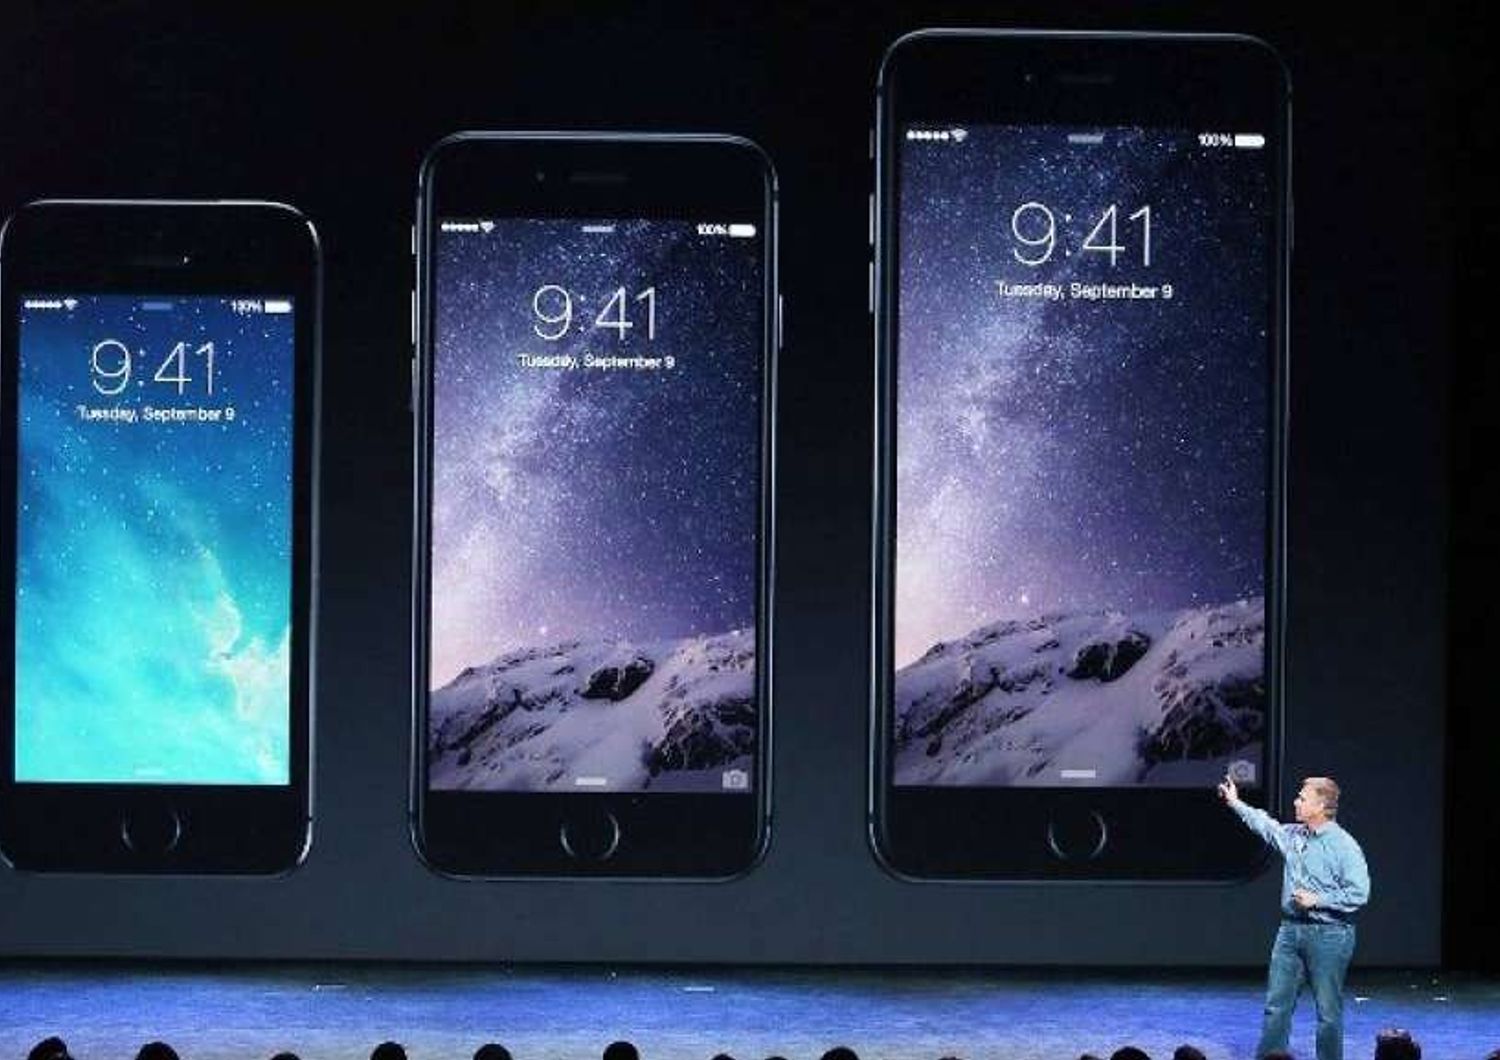 E' gia' record di prenotazioni per i nuovi iPhone6